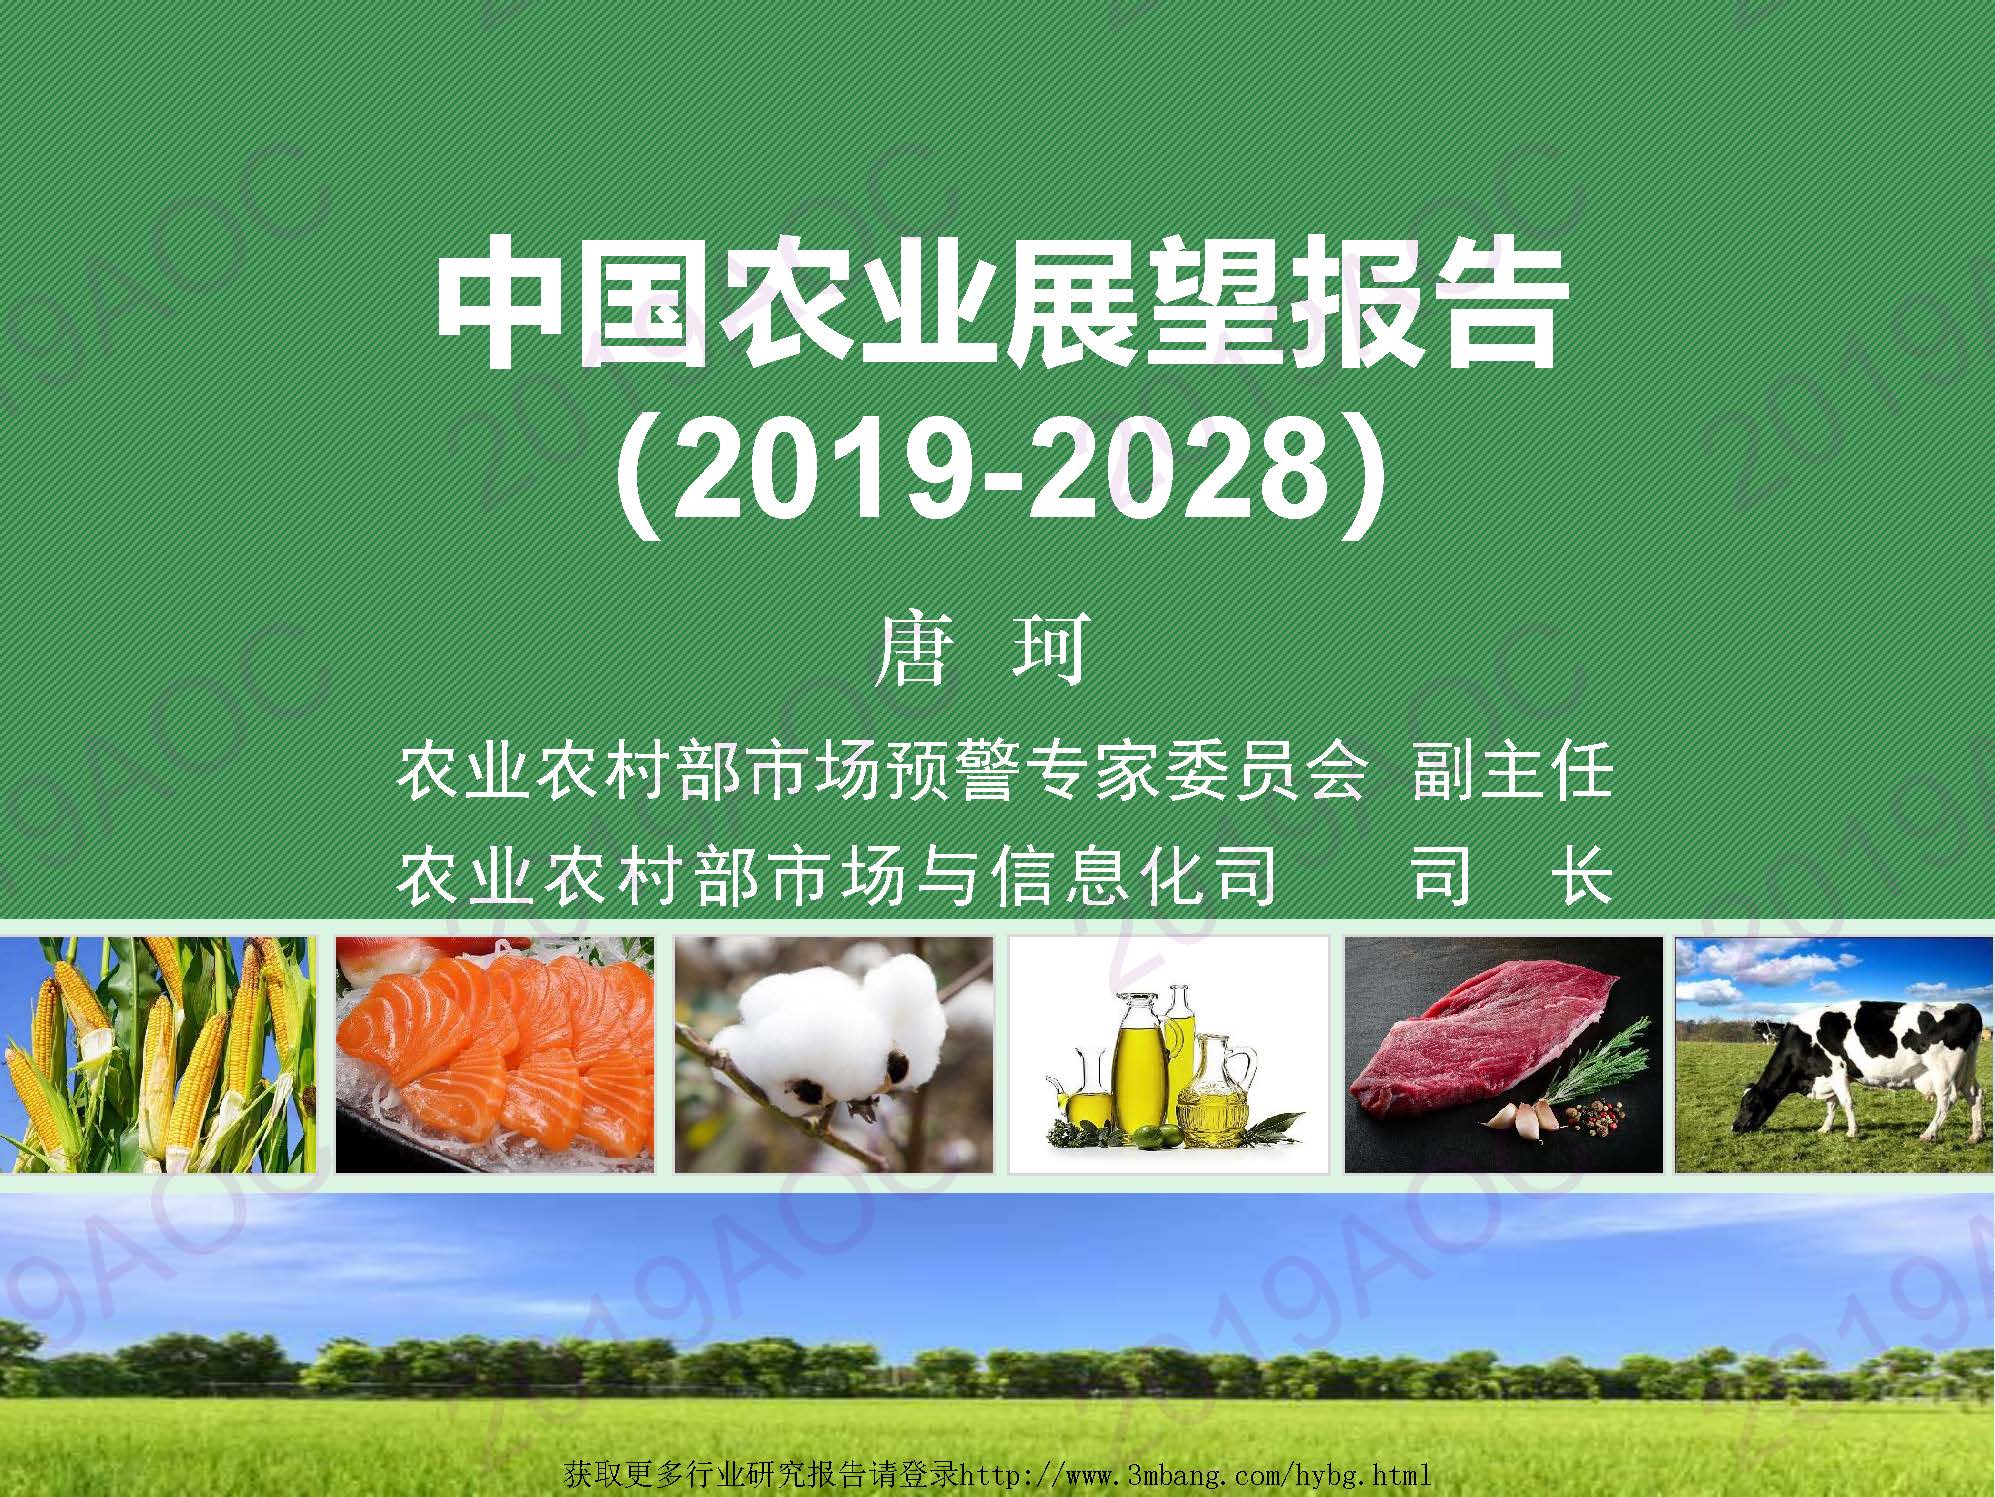 农业农村部市场与信息化司：2019-2028中国农业展望报告(附下载地址)